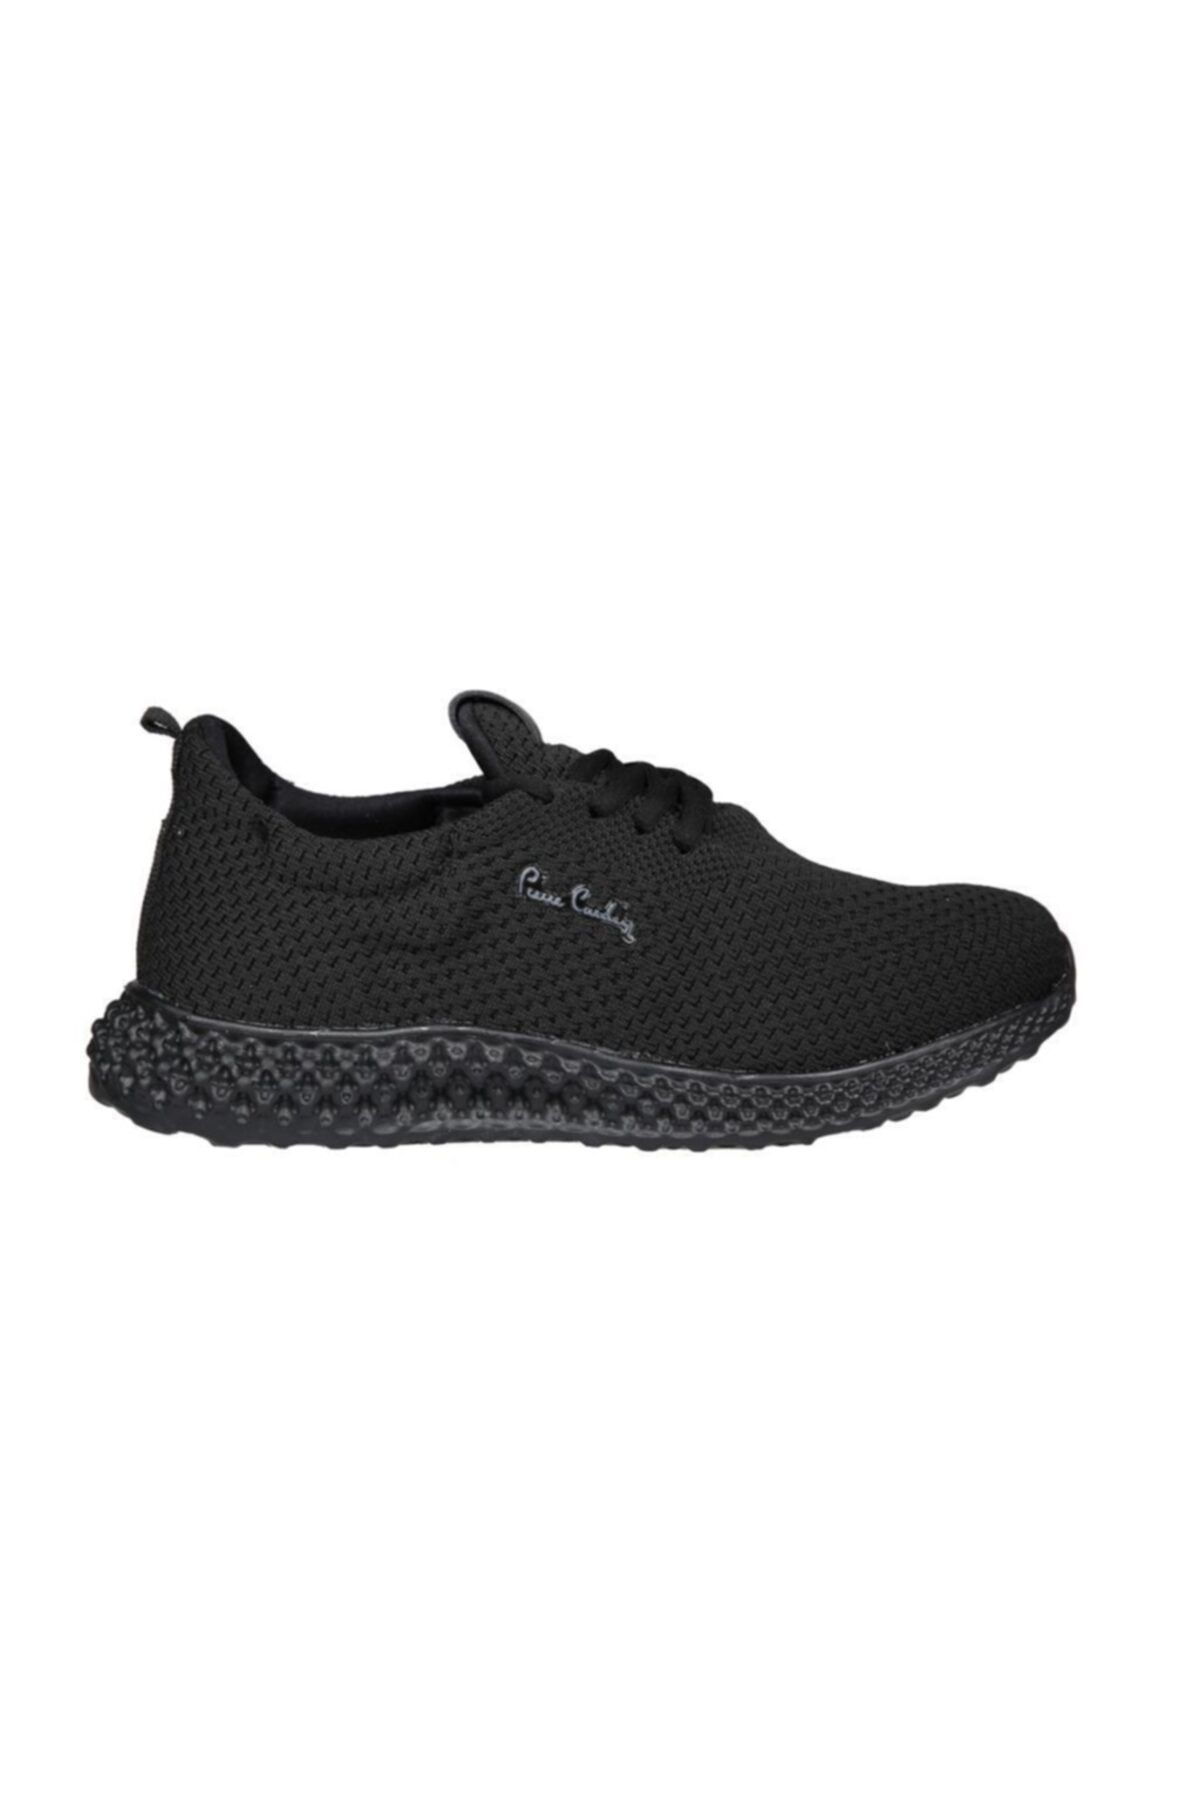 Pierre Cardin Erkek  Siyah Sneakers Pc-30646